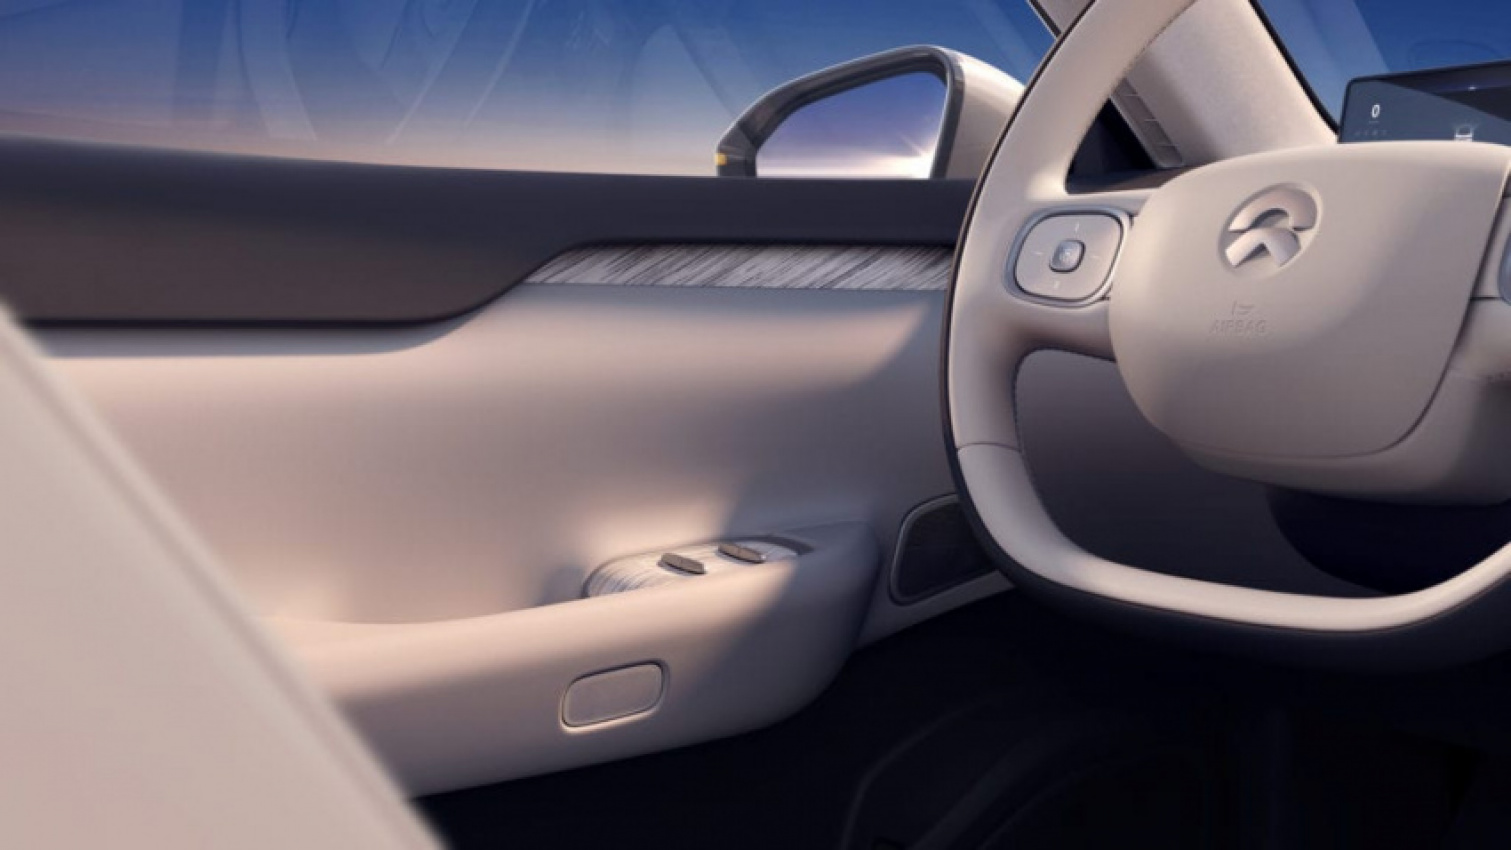 asia, autos, cars, nio et7, qualcomm technologies, william li, nio launches first autonomous driving model et7 sedan; partners with qualcomm